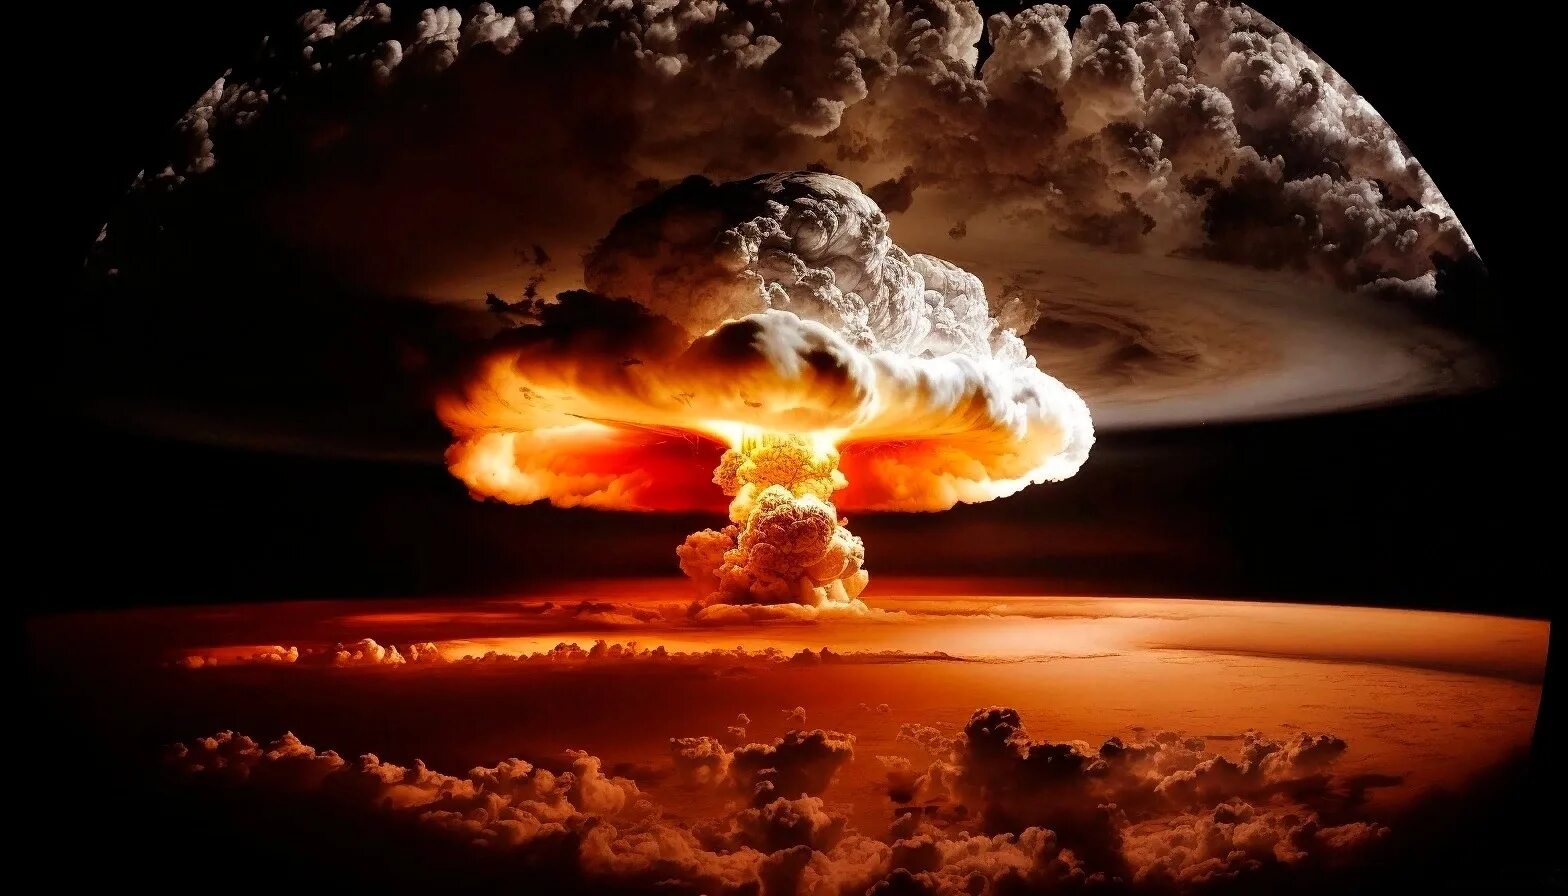 Ядерный взрыв. Атомный взрыв. Ядерный гриб. Z;htysq dphsdp. Ядерный термоядерный взрыв